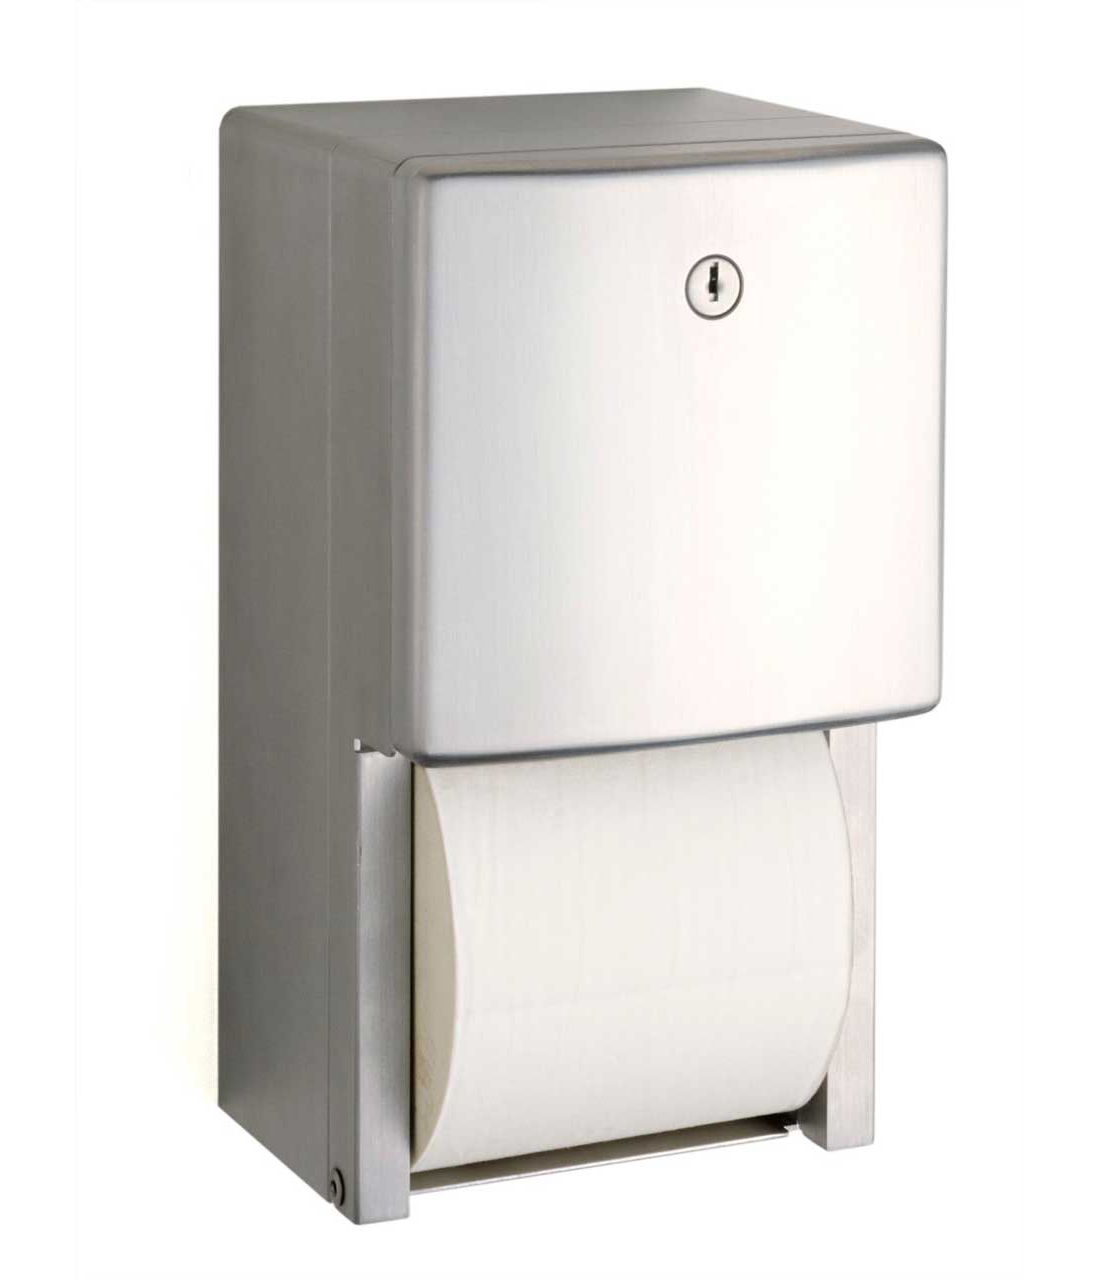 WC-Papierrollenhalter für mehrere Rollen, Aufputzmontage Image